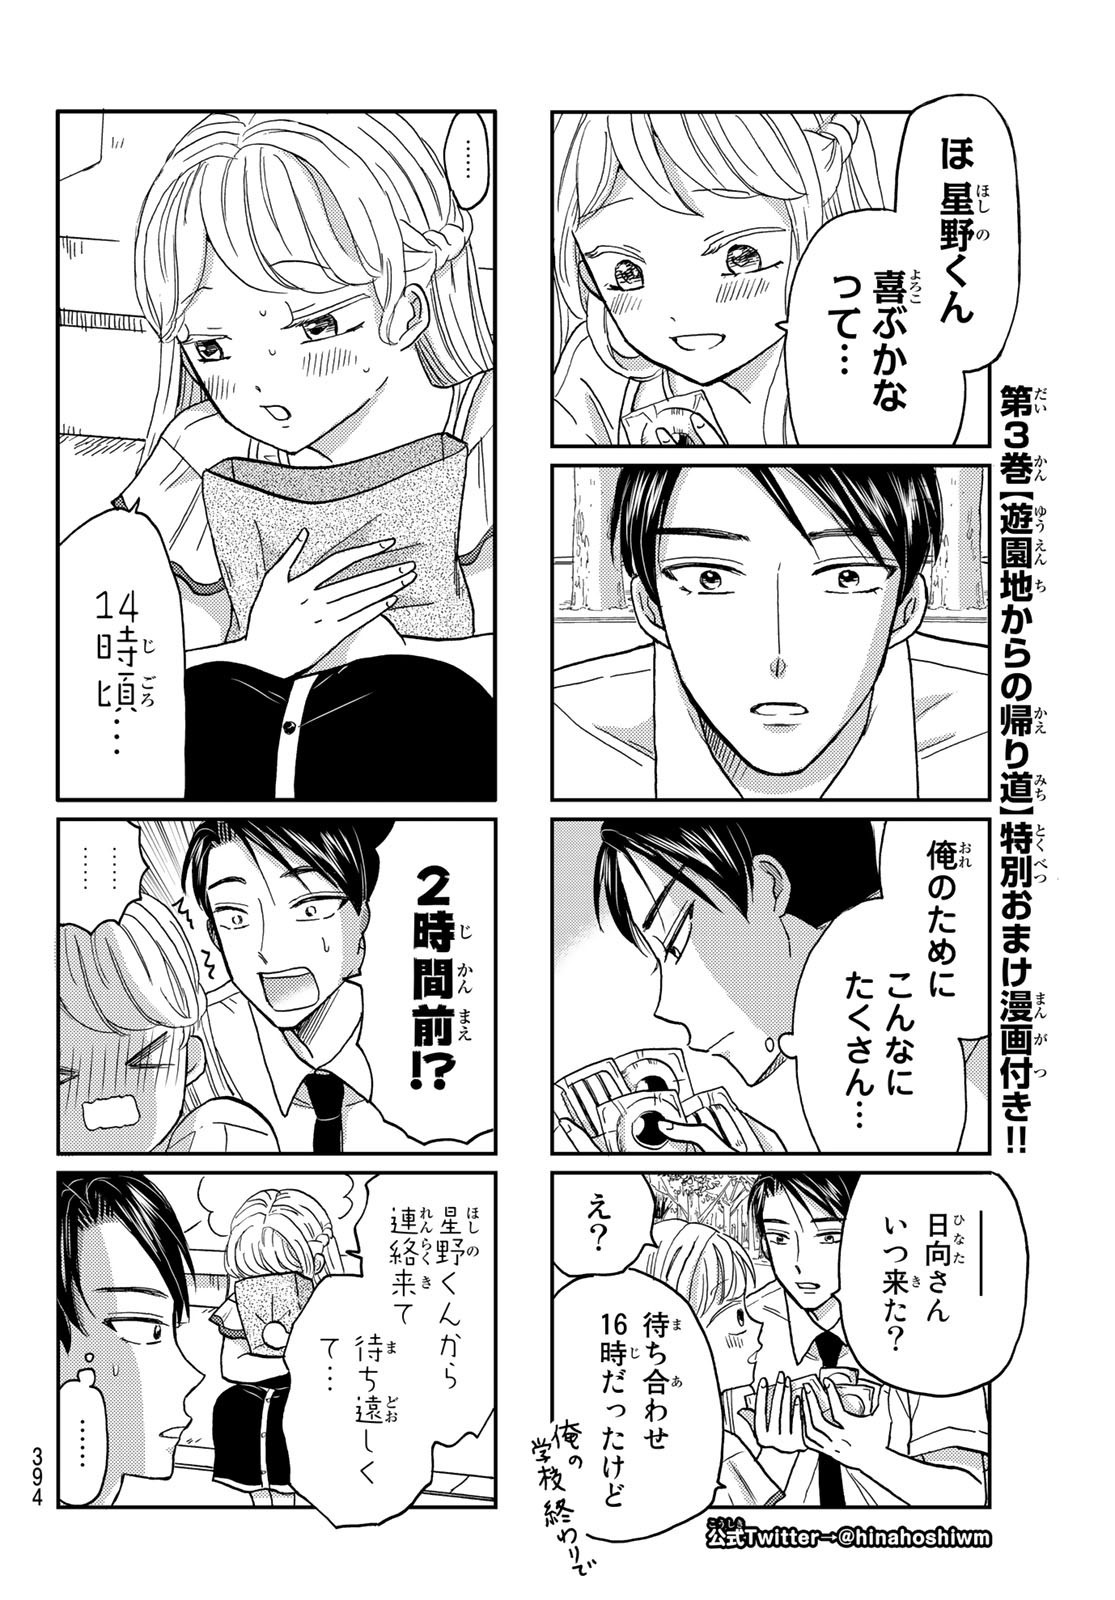 Hinata-san, Hoshino desu. - Chapter 043 - Page 2